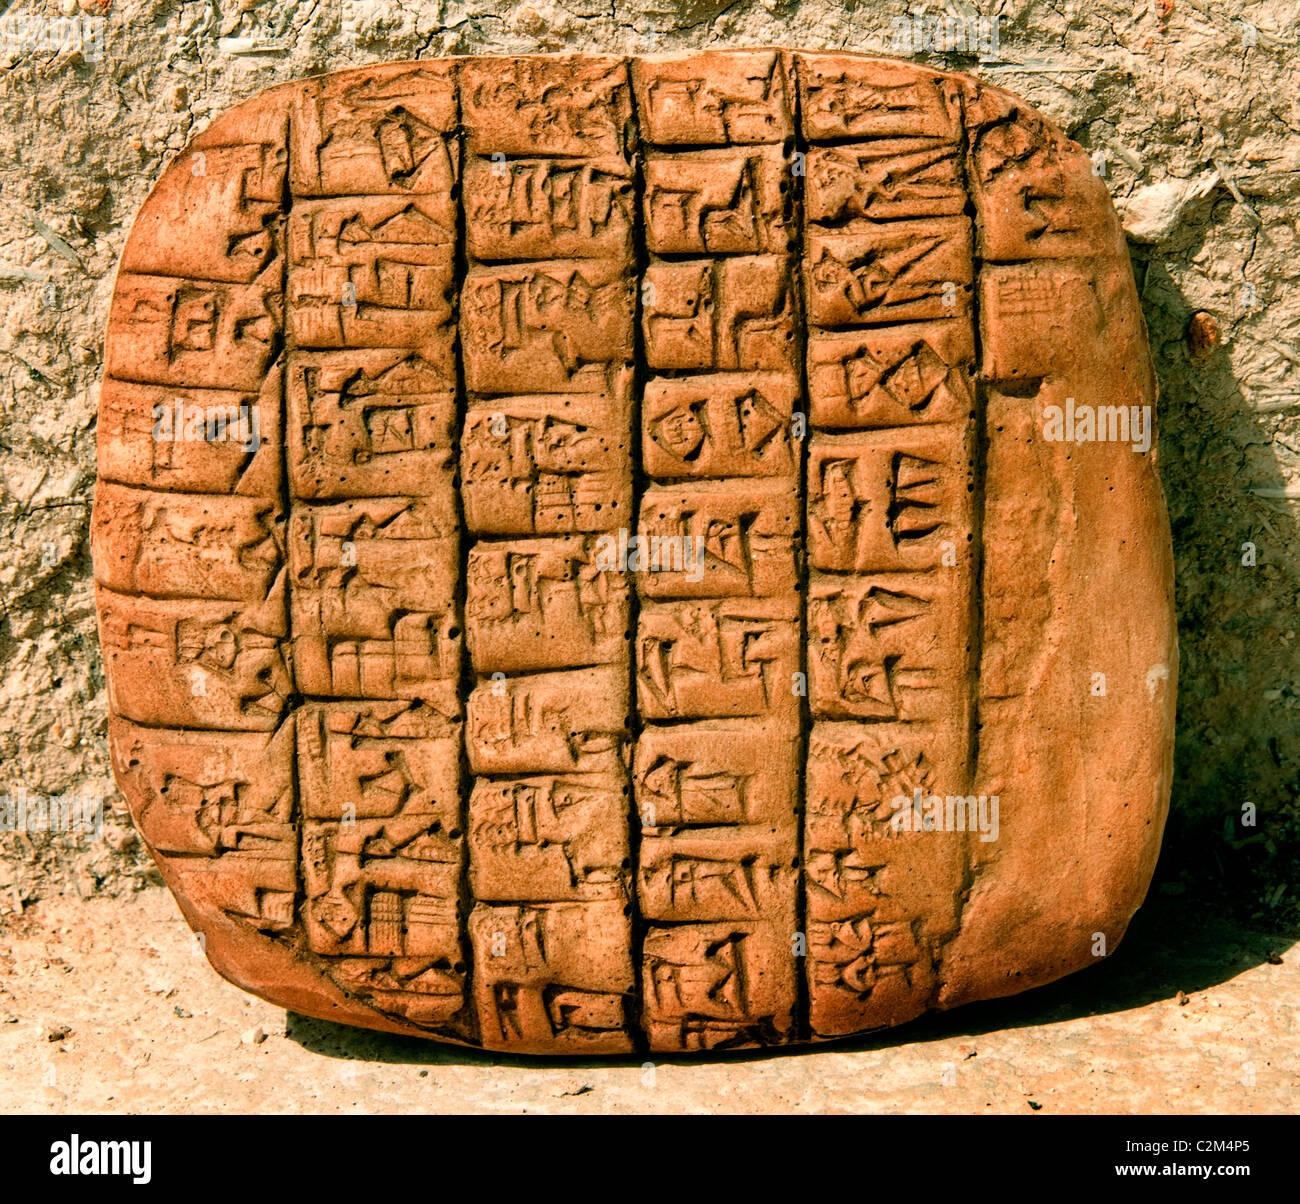 Copia nueva Tablet Ebla Siria Alepo 3000 BC - 1650 BC 20.000 tablillas cuneiformes que allí se encuentran idioma Semita acadio relacionados Foto de stock